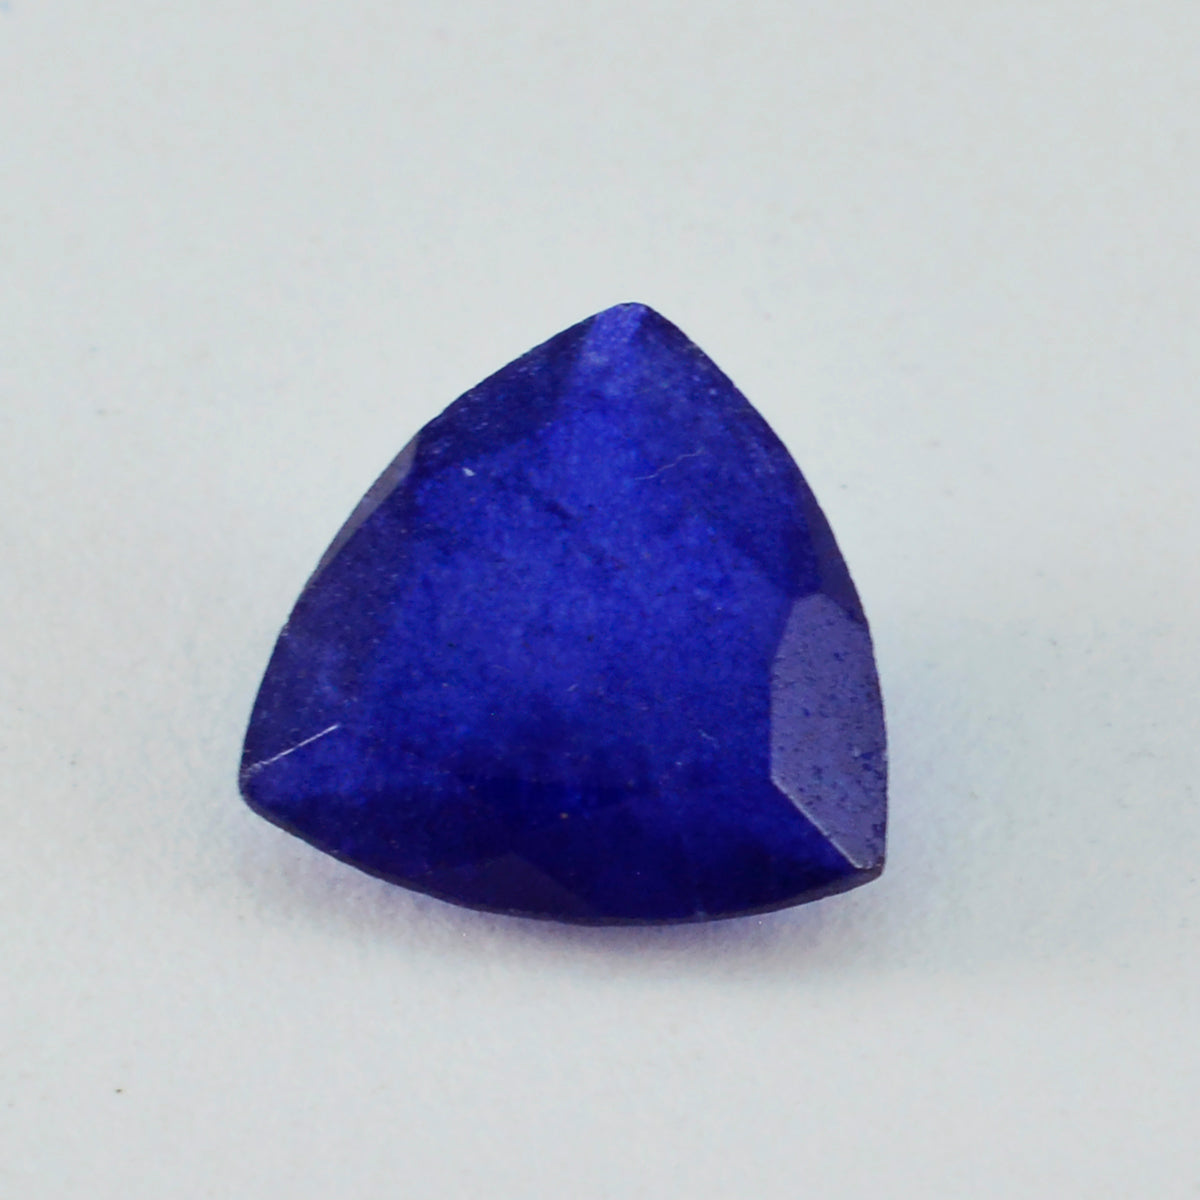 riyogems 1 шт. настоящая синяя яшма ограненная 13x13 мм форма триллиона драгоценный камень замечательного качества